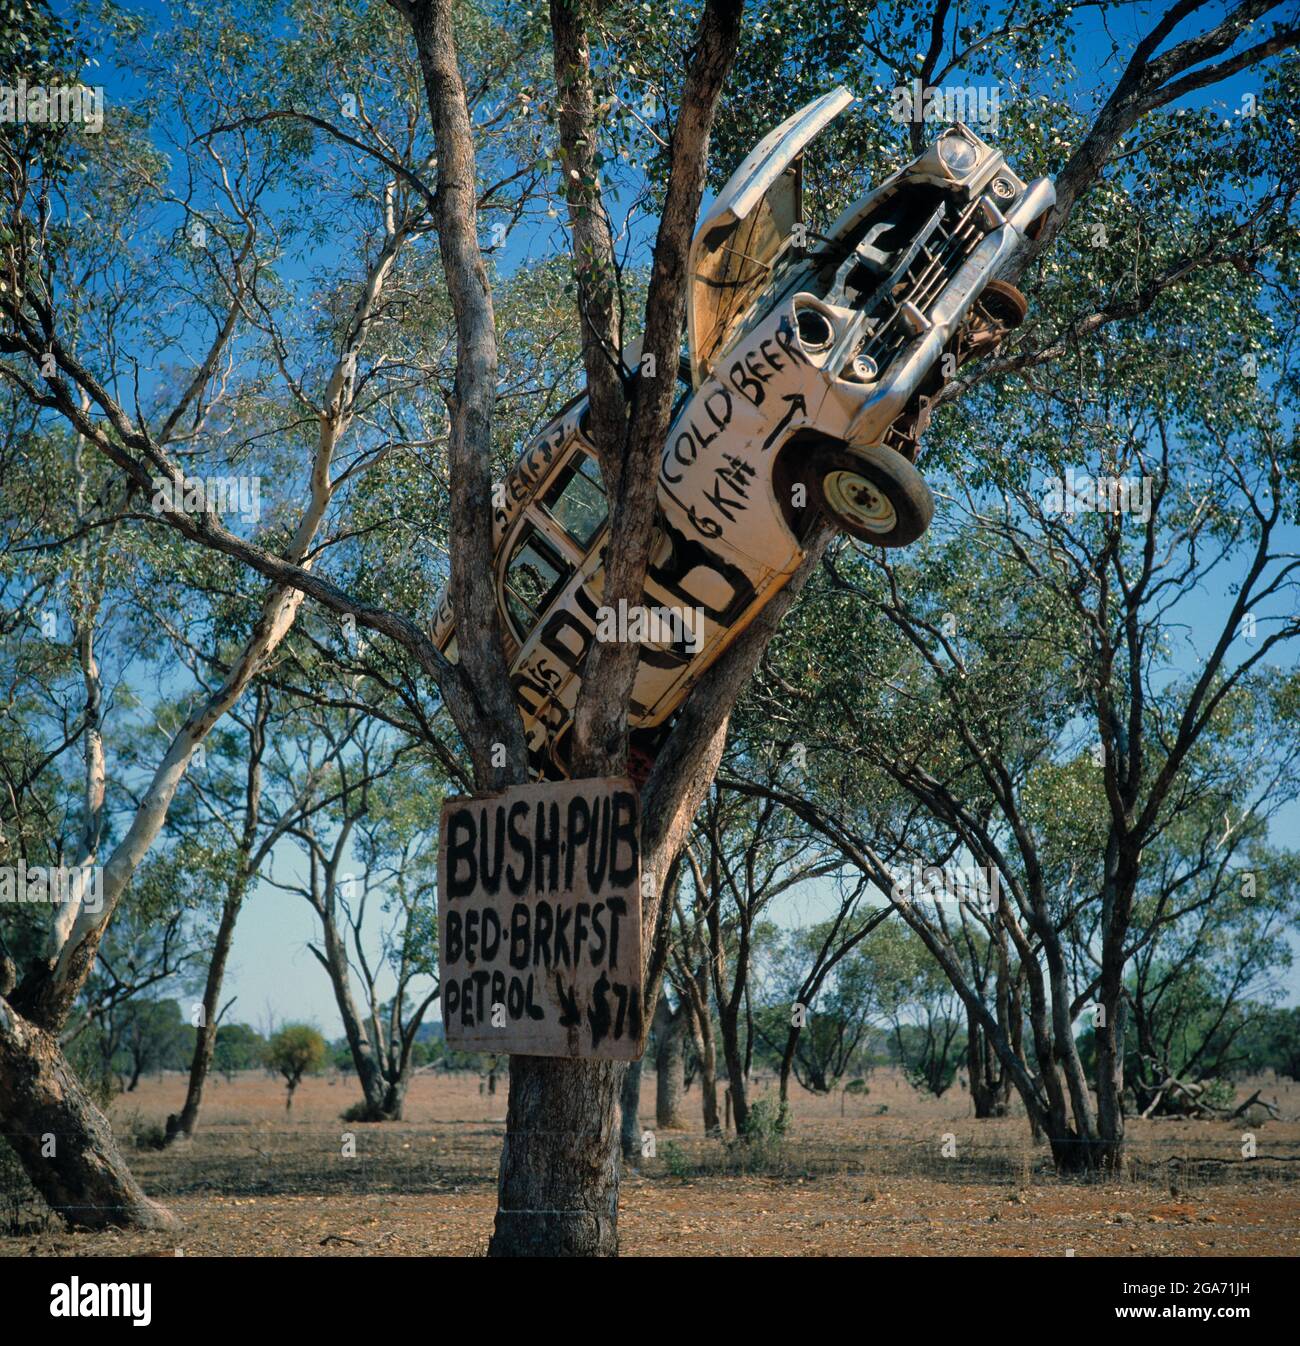 Australia. Outback del Territorio del Norte. Cartel de Bush Pub. Un coche destrozado clavó un árbol de goma. Foto de stock